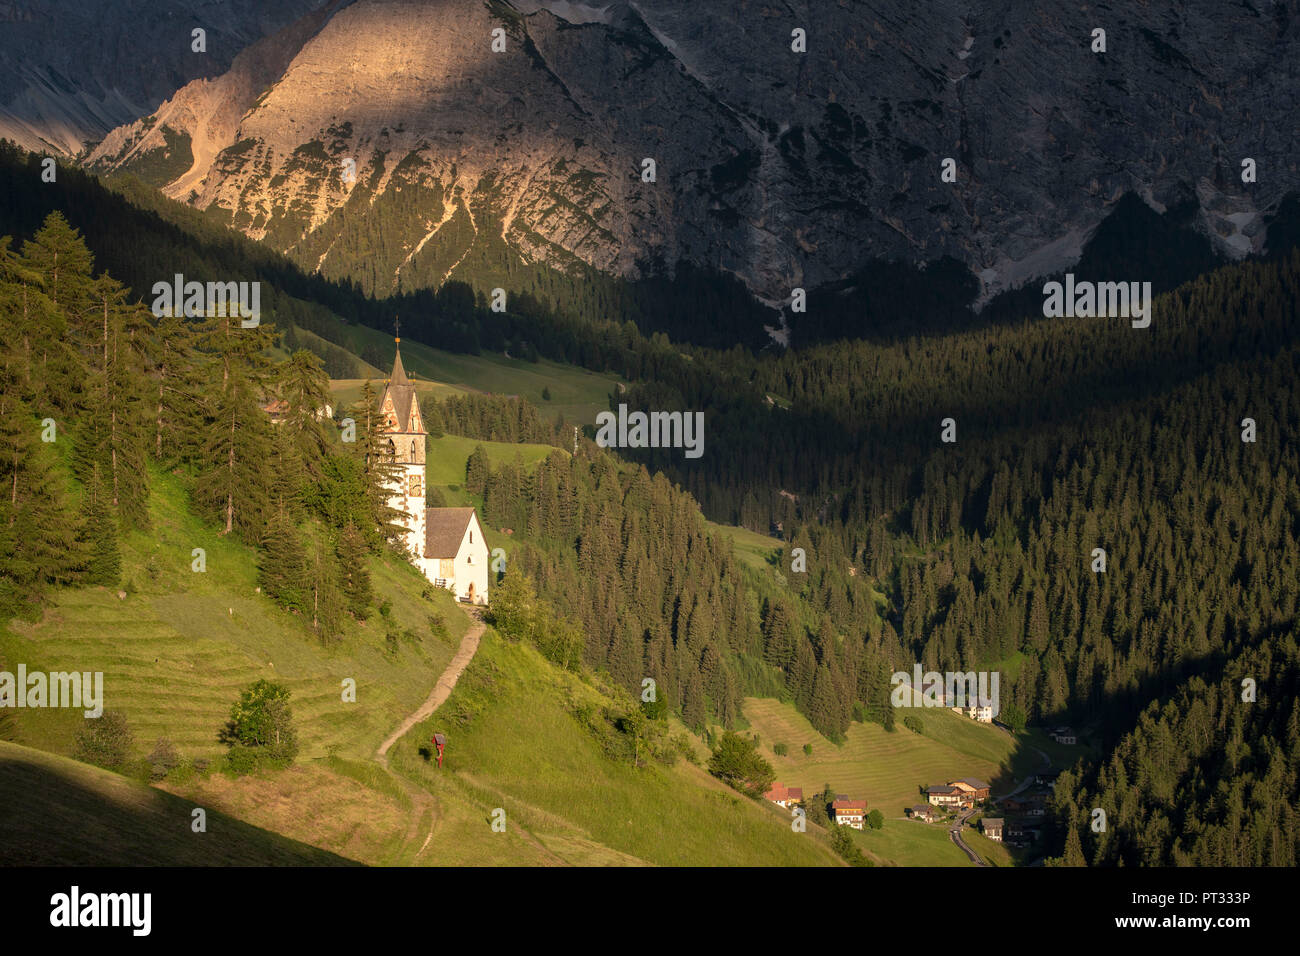 La Valle / Wengen, Alta Badia, Bolzano province, South Tyrol, Italy, The St, Barbara chapel at sunset Stock Photo